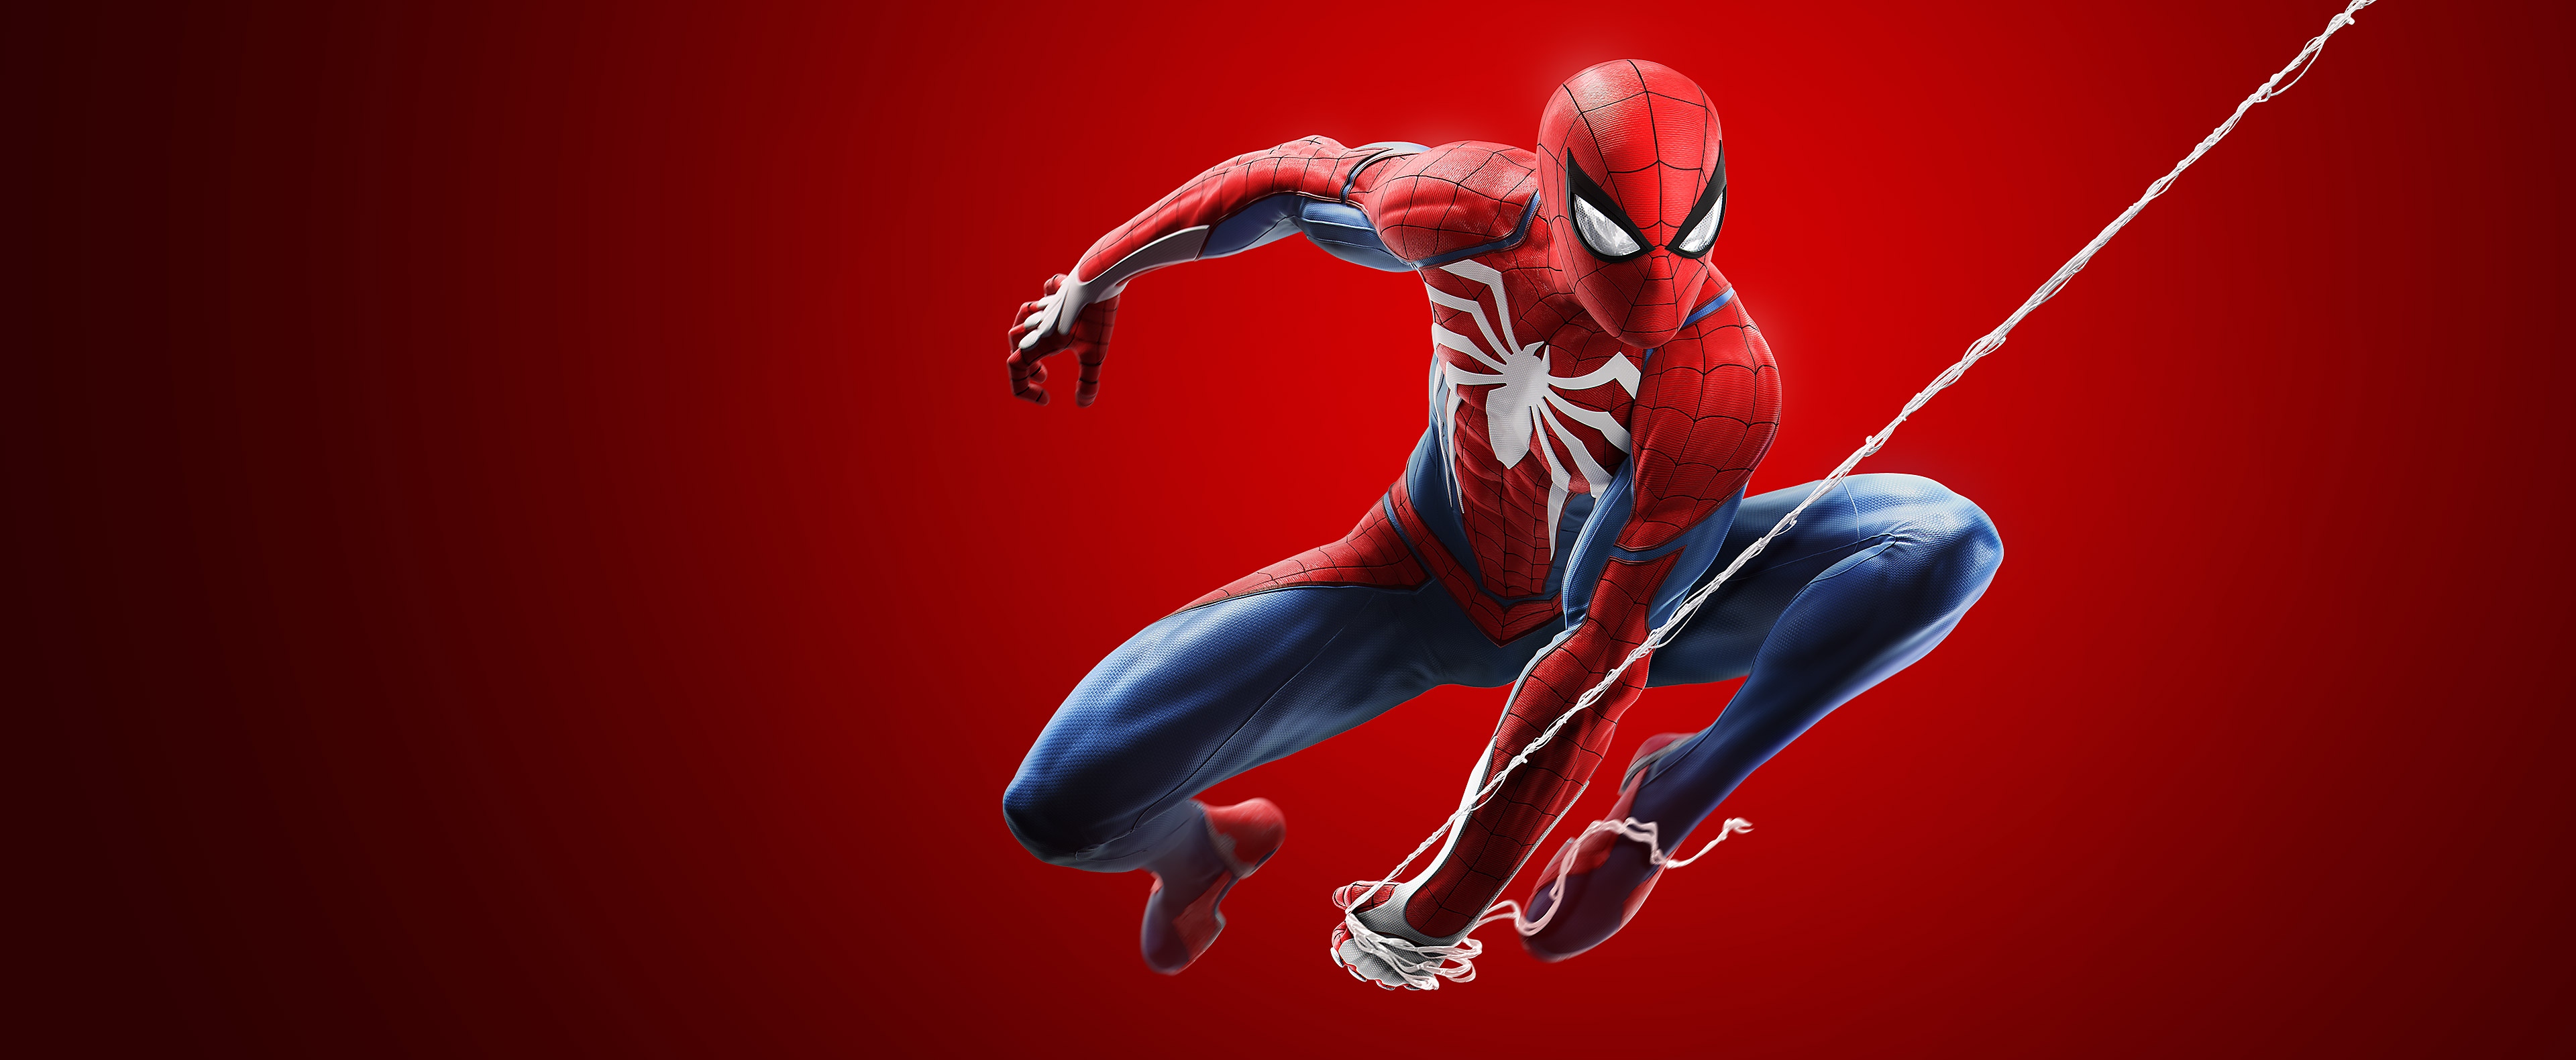 spider-man hero